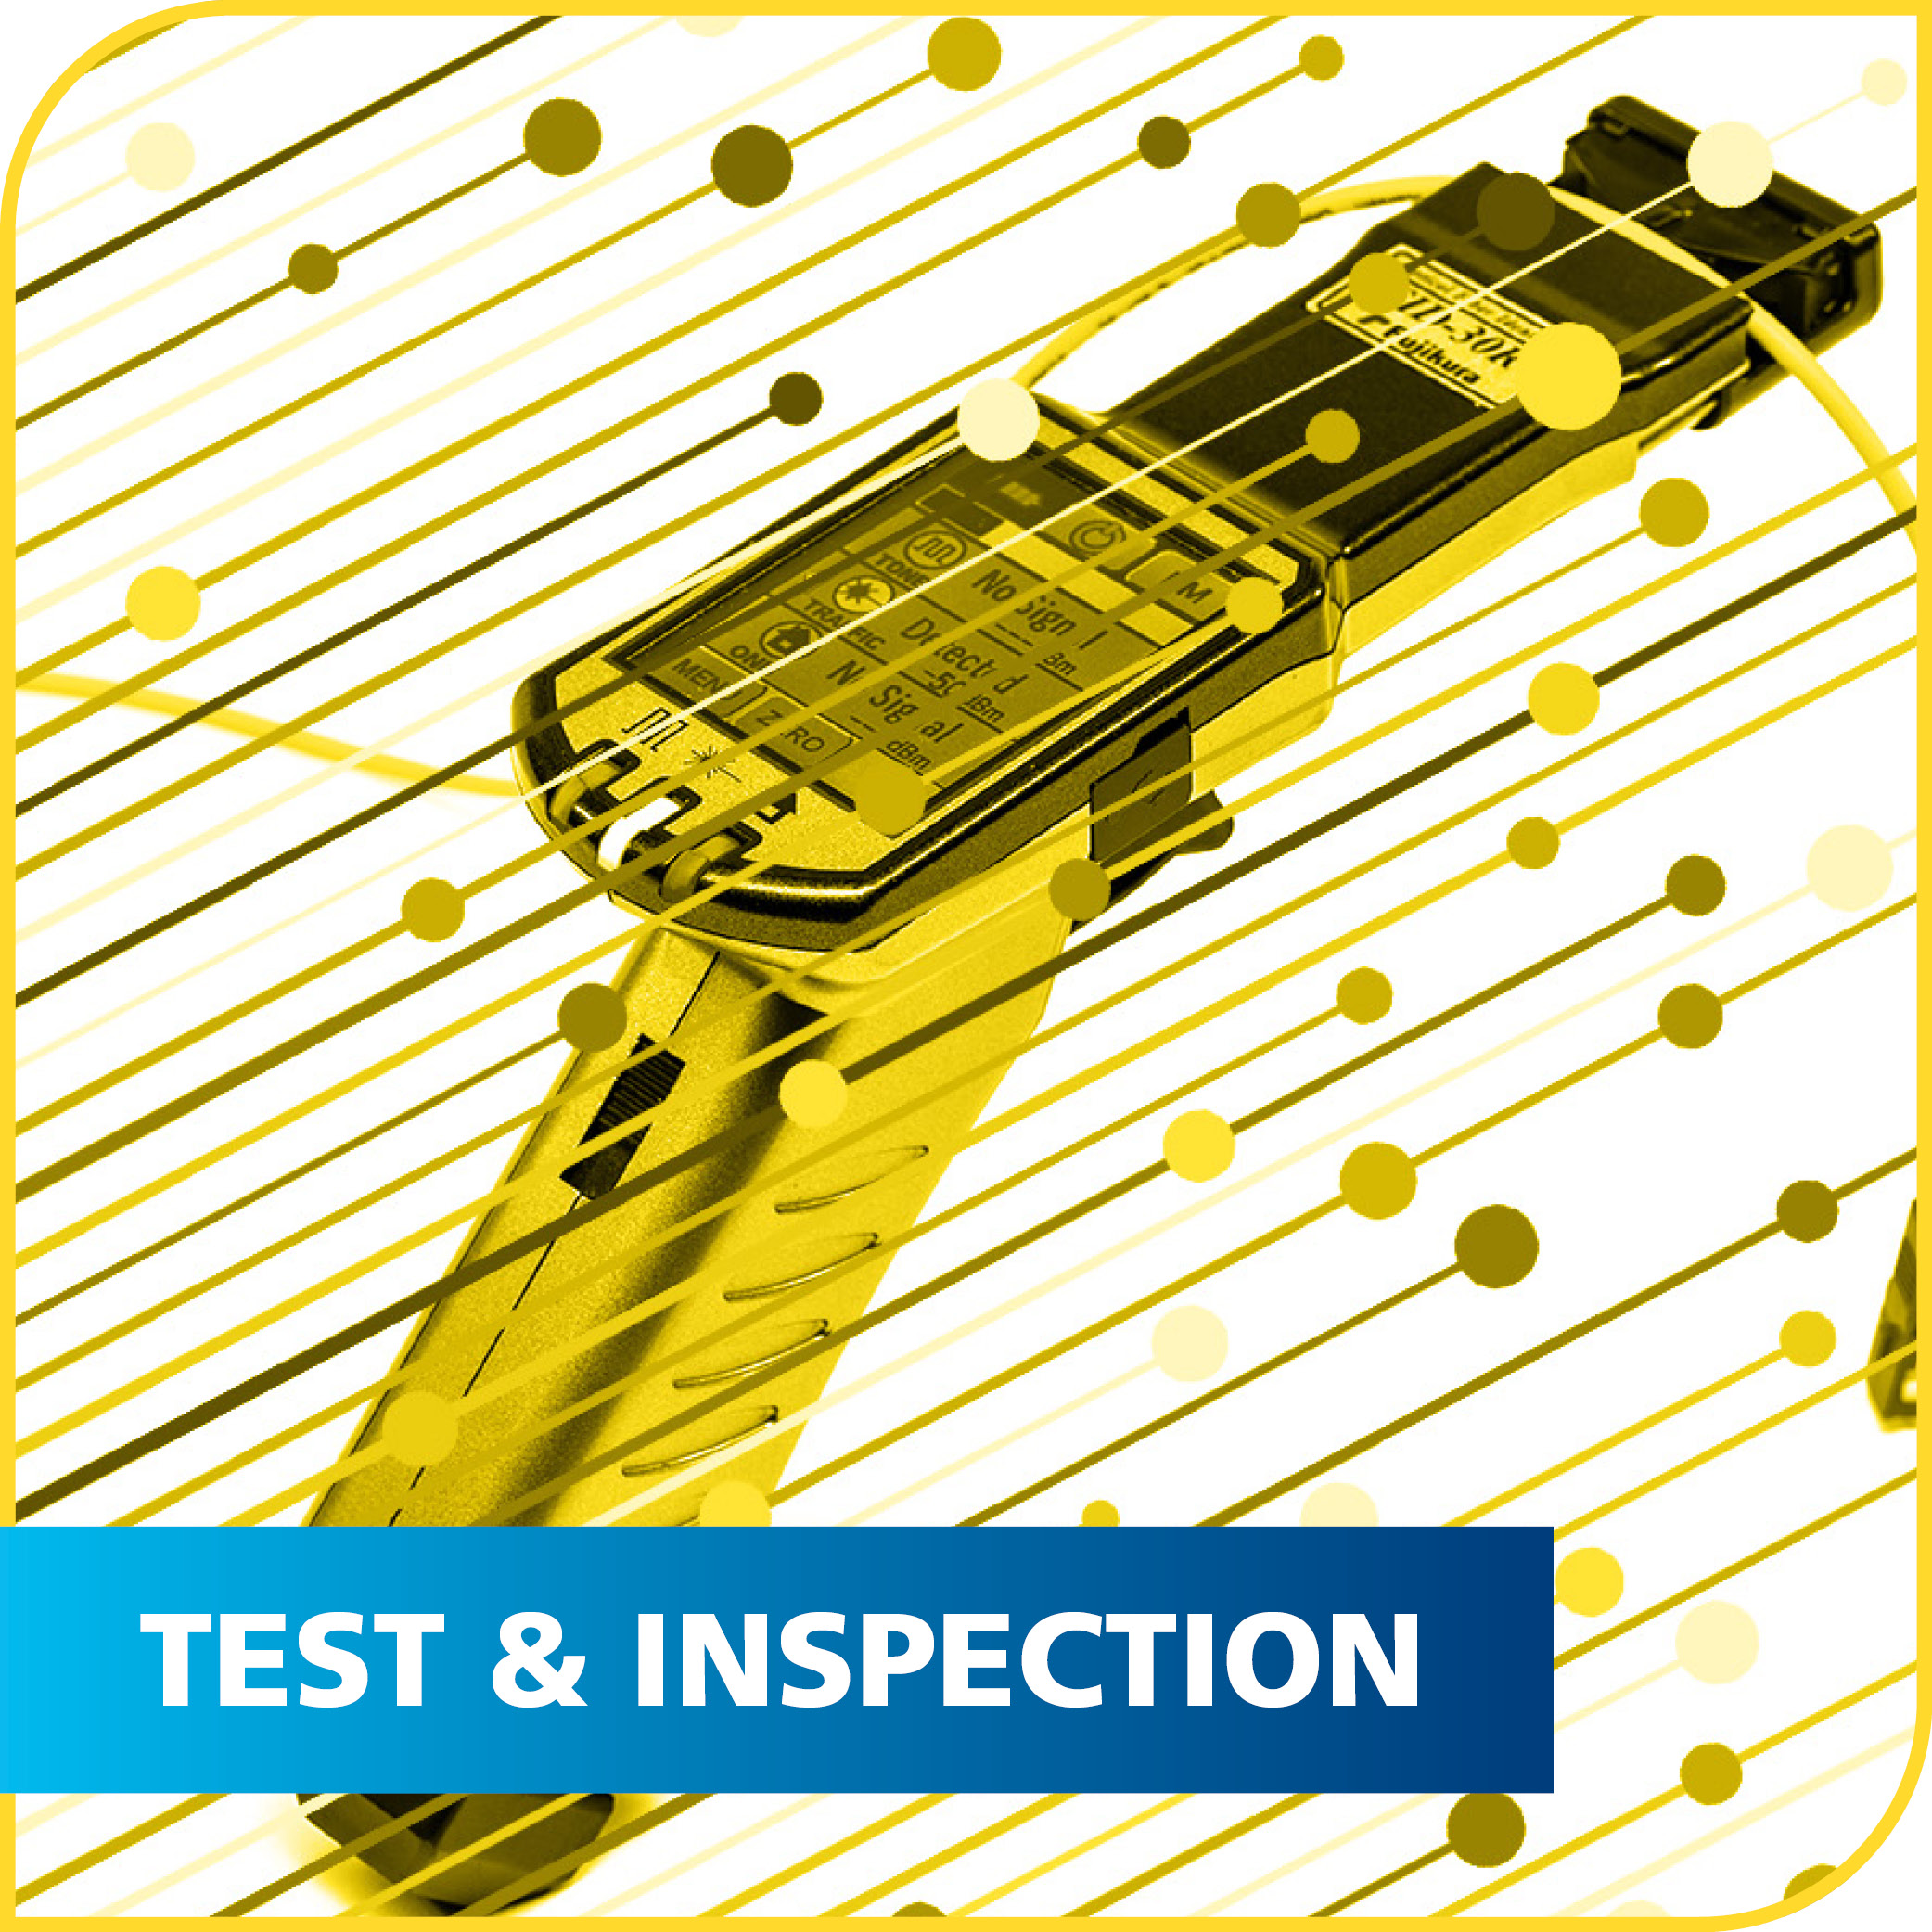 Test, Measurement & Inspection